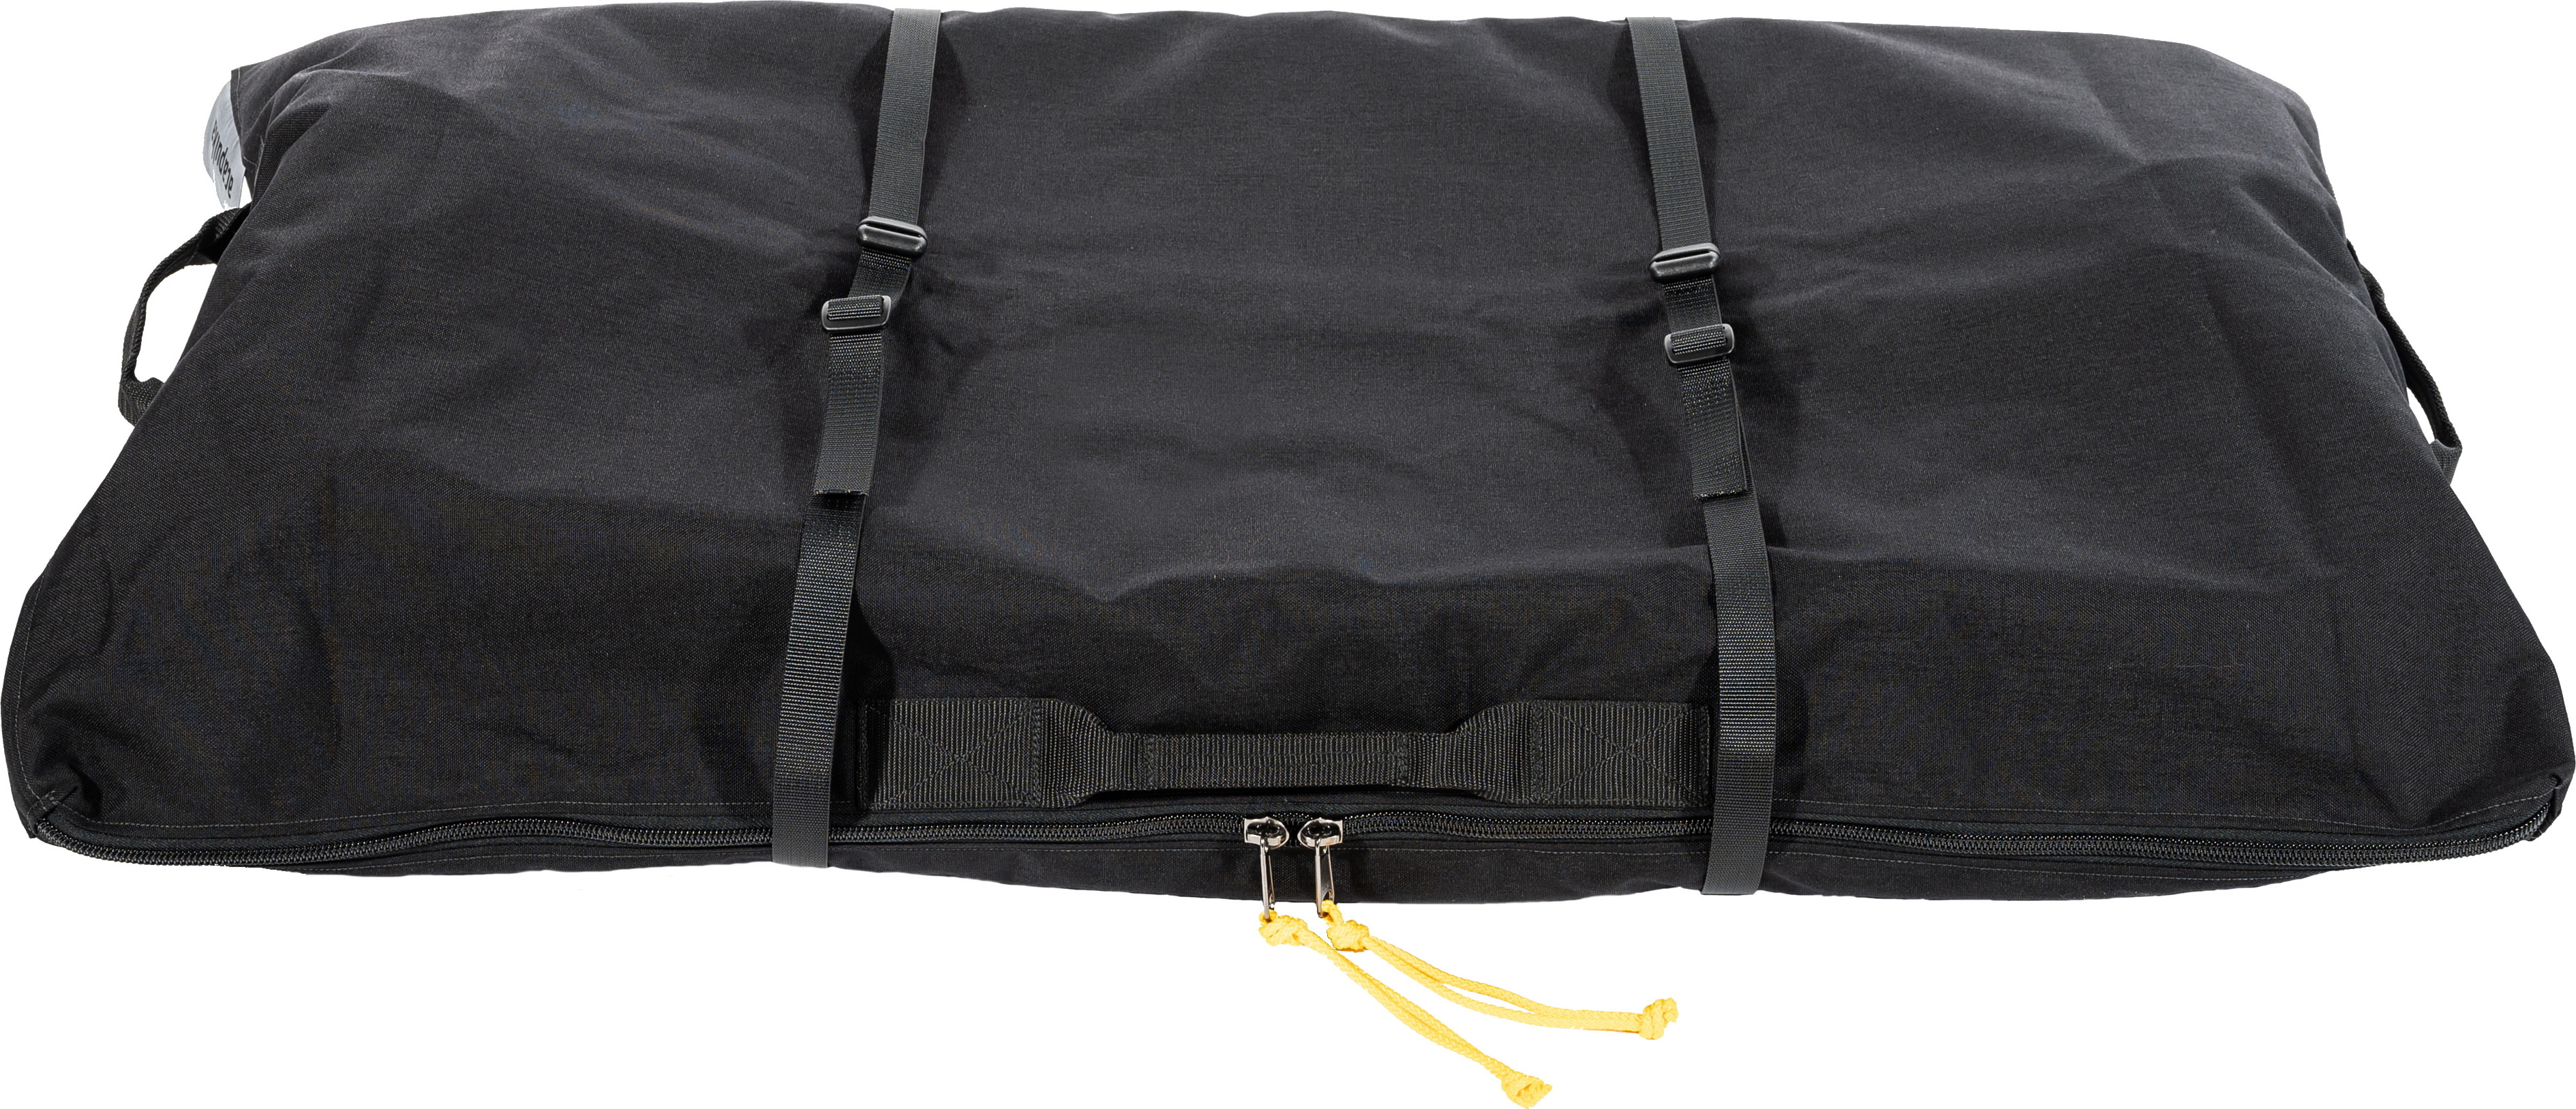 Transport bag For 120 cm Pulk